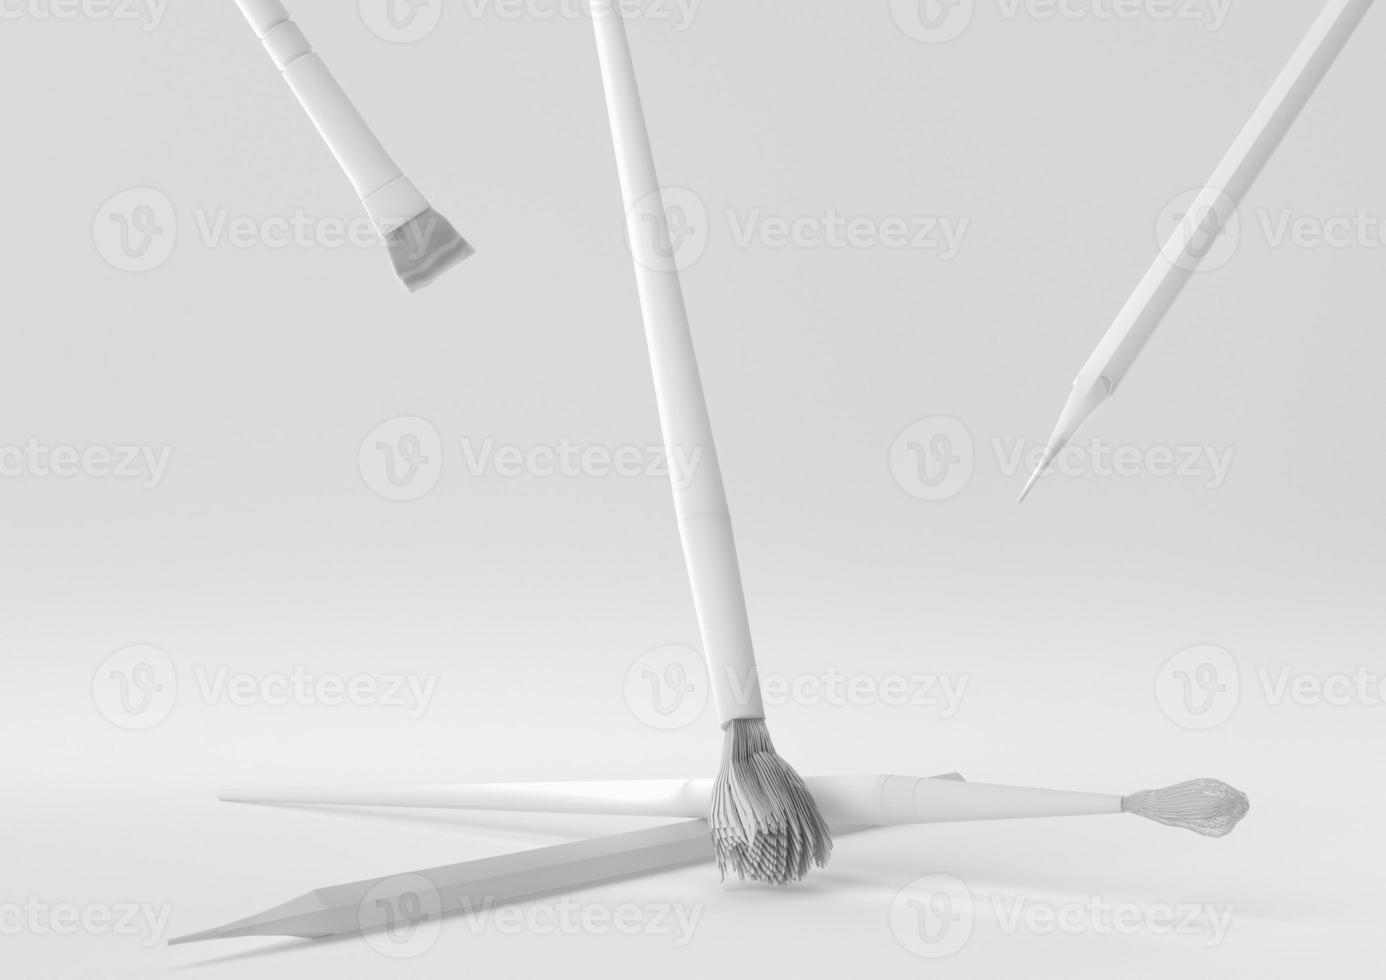 pennelli bianchi sporchi galleggianti su sfondo bianco. idea di concetto minimale creativa. monocromo. rendering 3d. foto